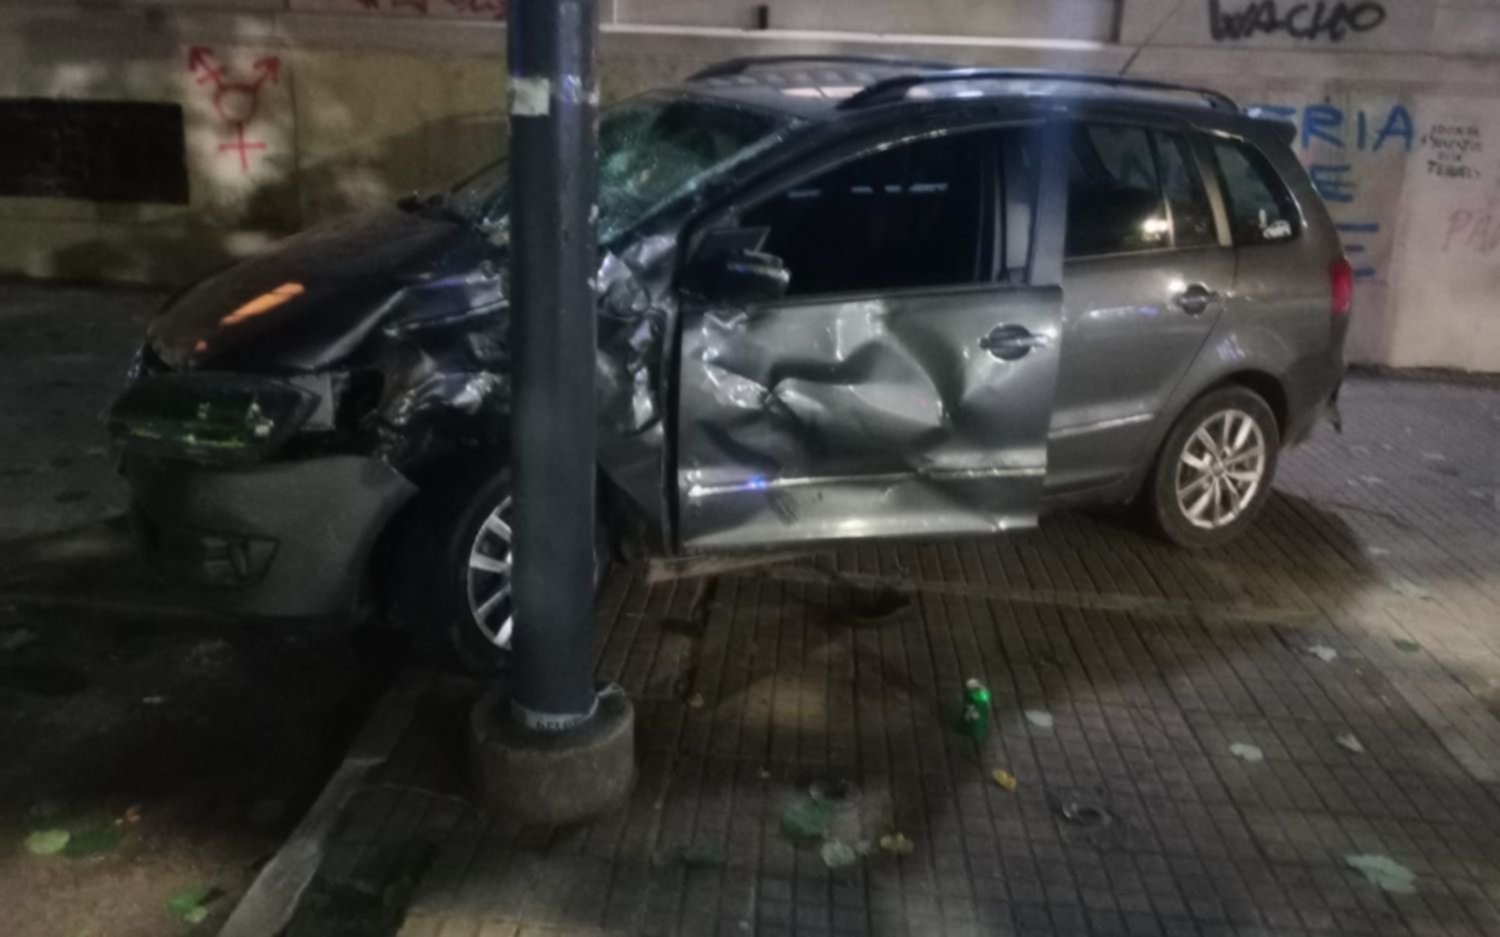 Madrugada accidentada en La Plata: choque de auto y dos motos dejó un muerto y tres heridos